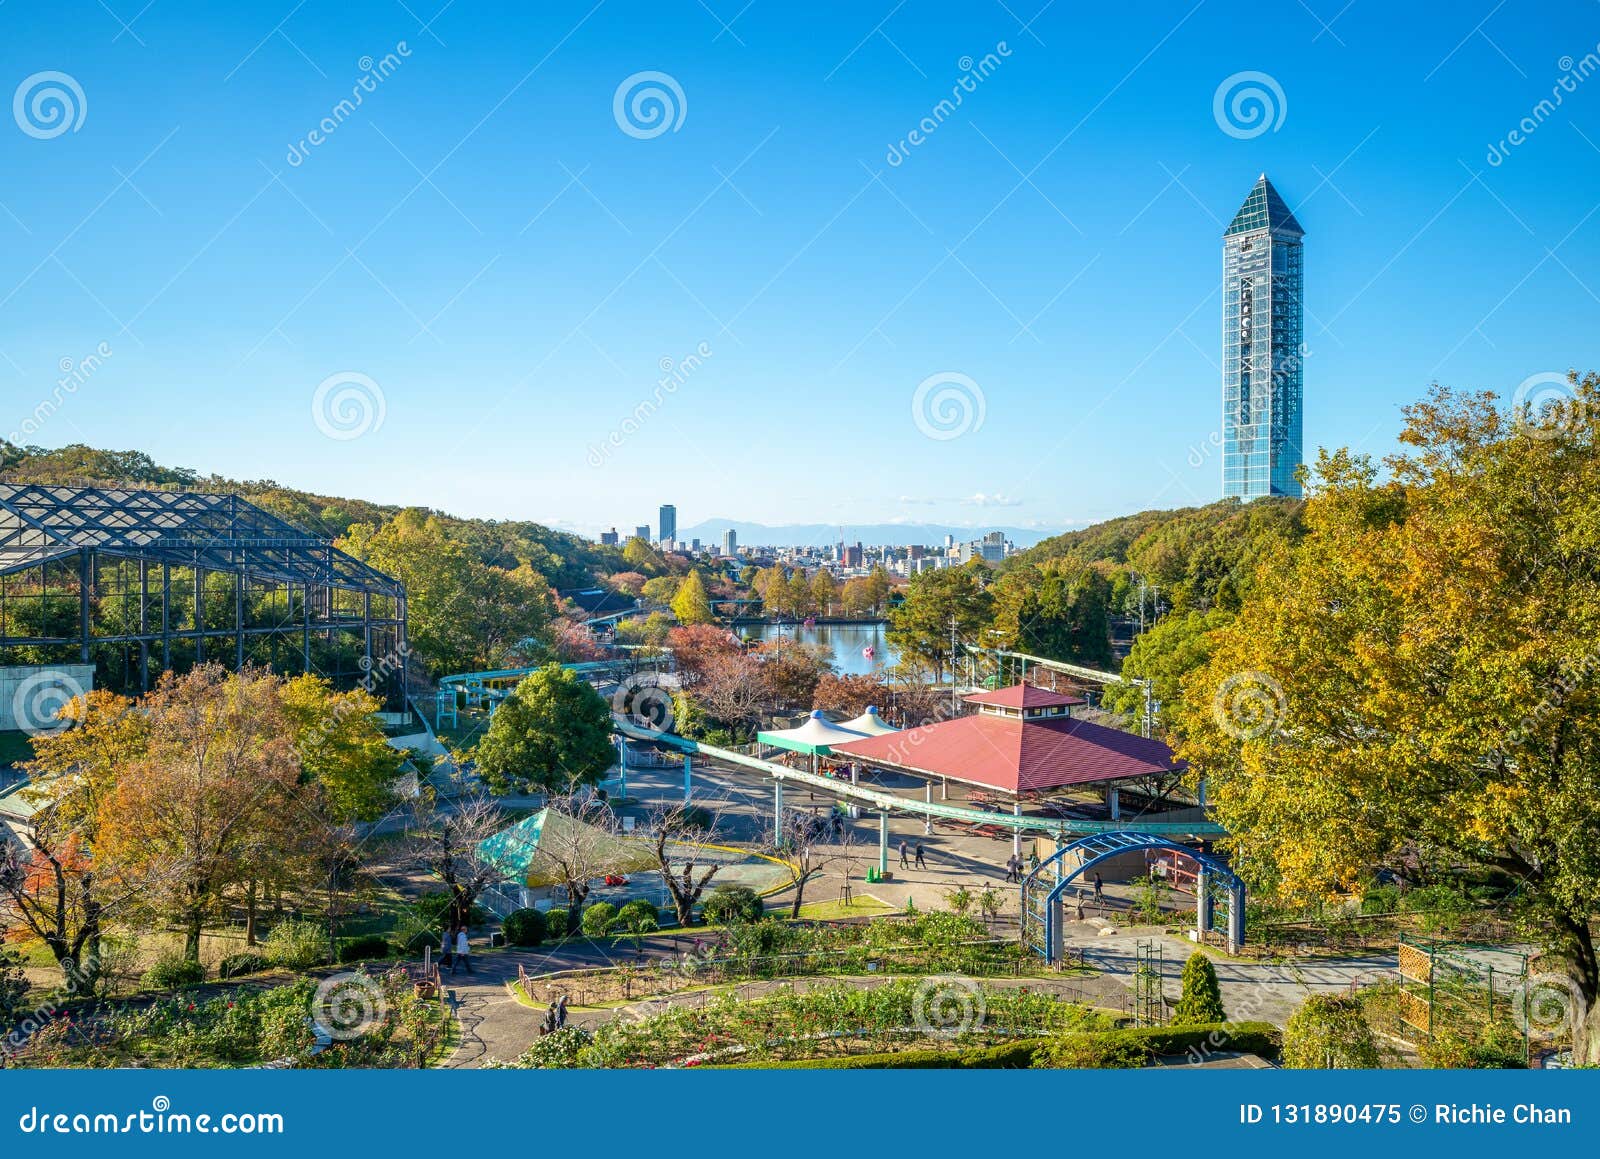 Higashiyama Zoo And Botanical Gardens In Nagoya Stock Image